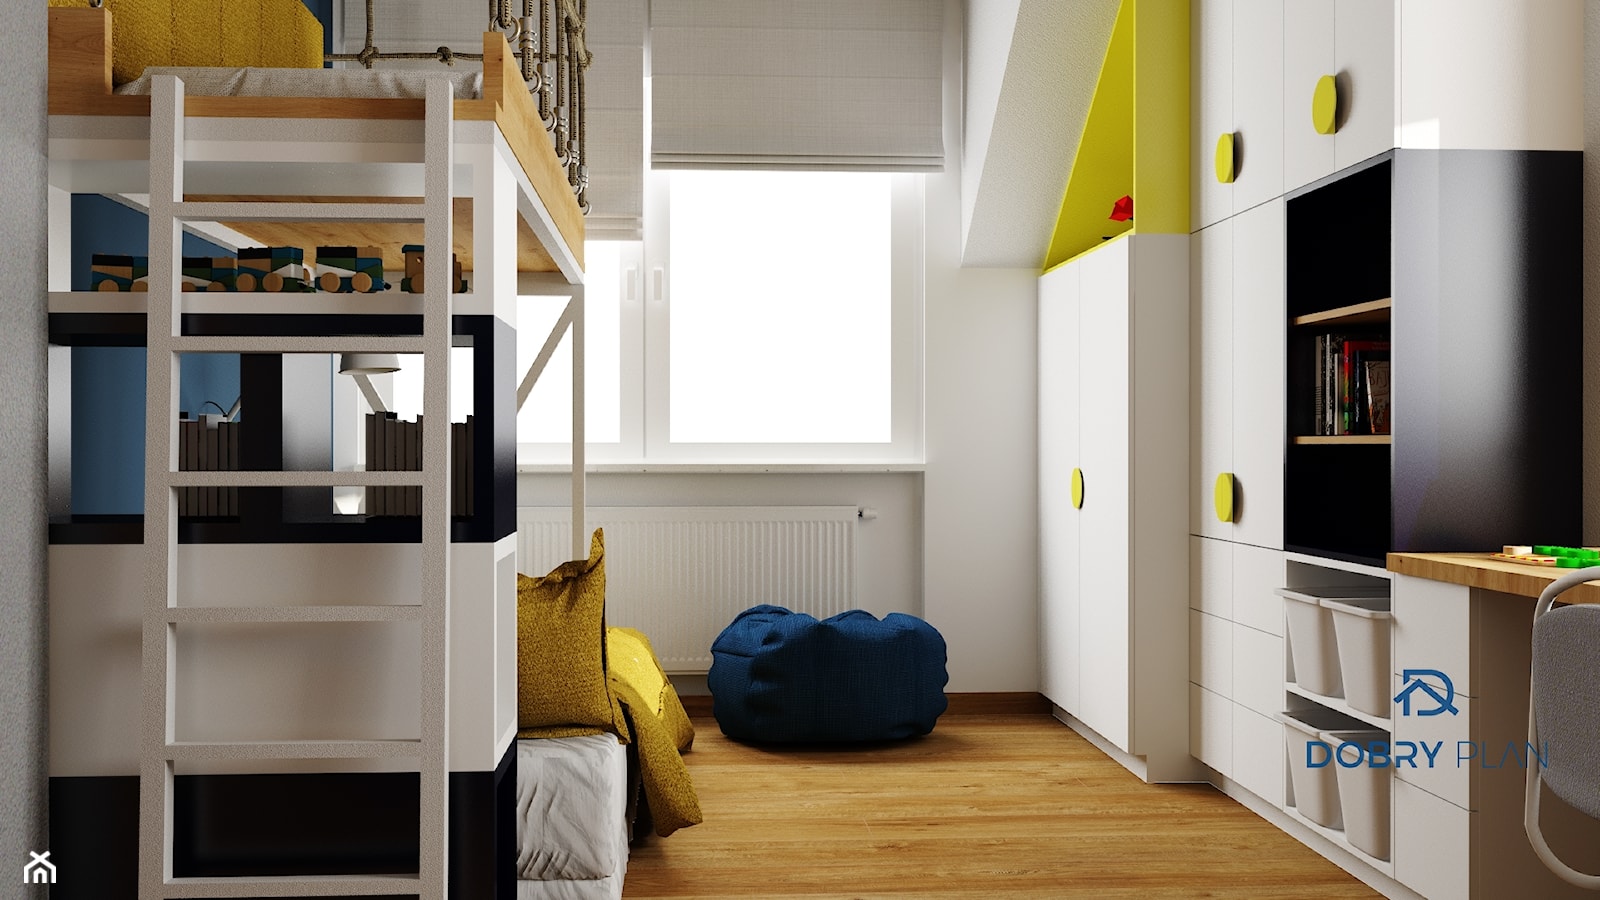 Łóżko piętrowe - zdjęcie od Projektowanie wnętrz Dobry Plan - Homebook